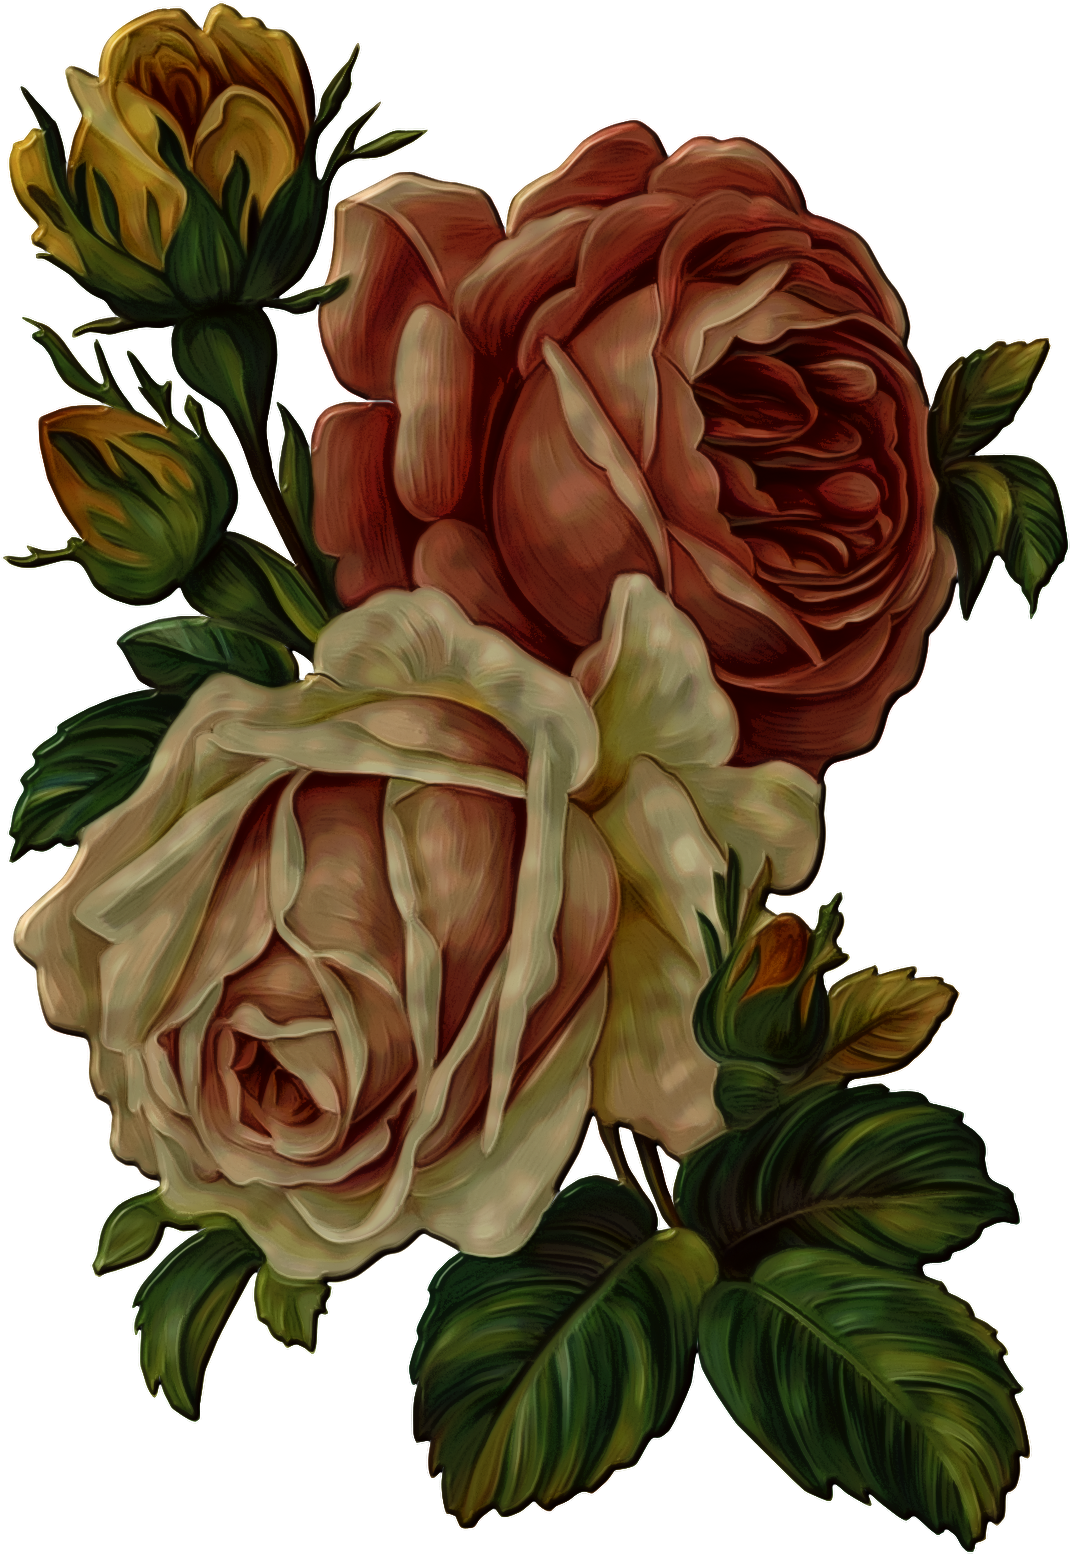 Vintage Rose Bouquet Illustration